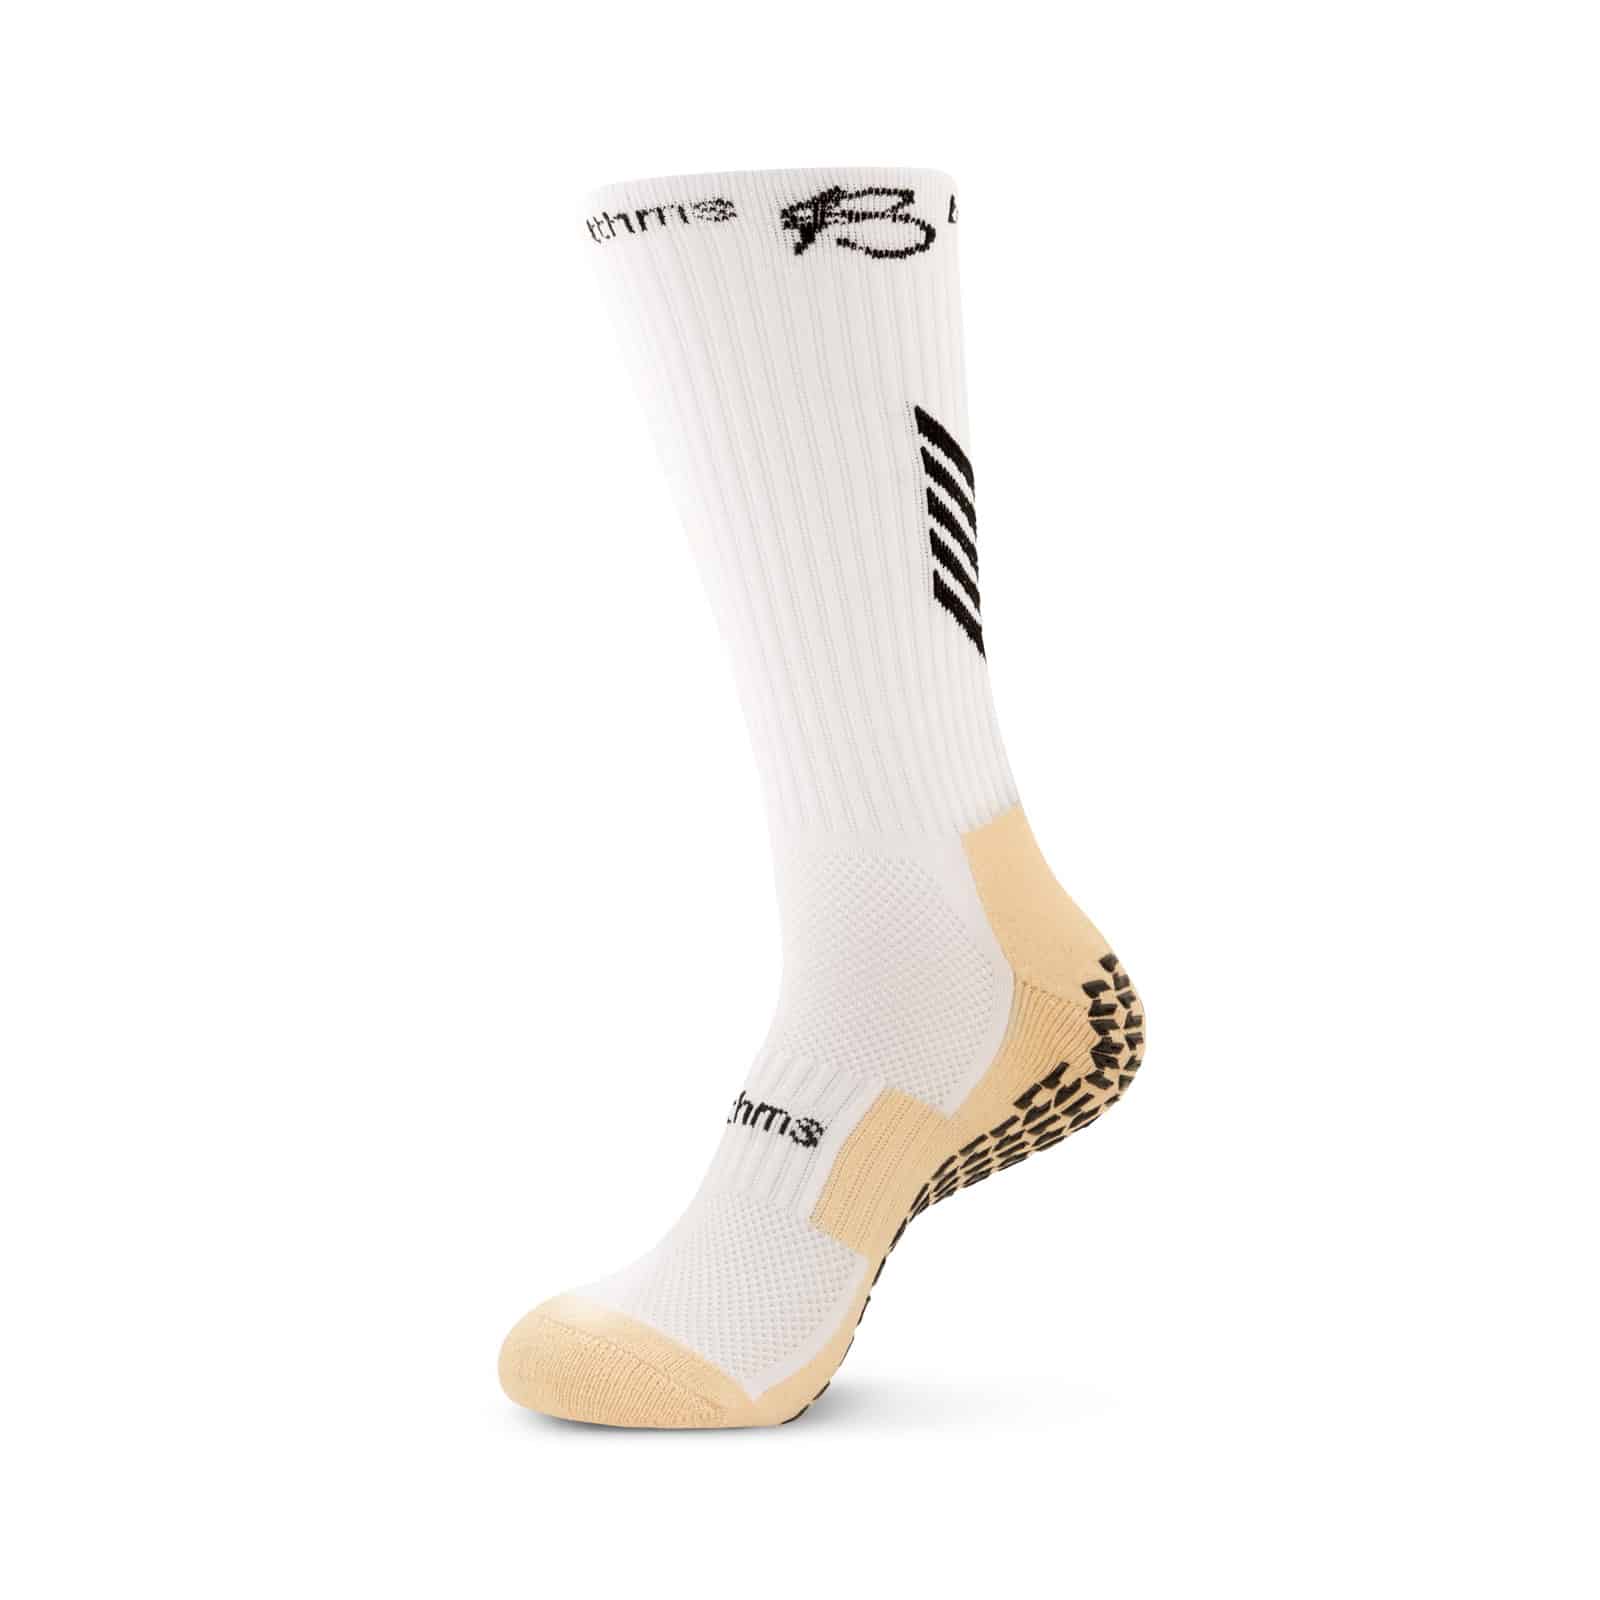 Black Grip Socks For Athletes - Shop Our Collection - Botthms – botthms UK